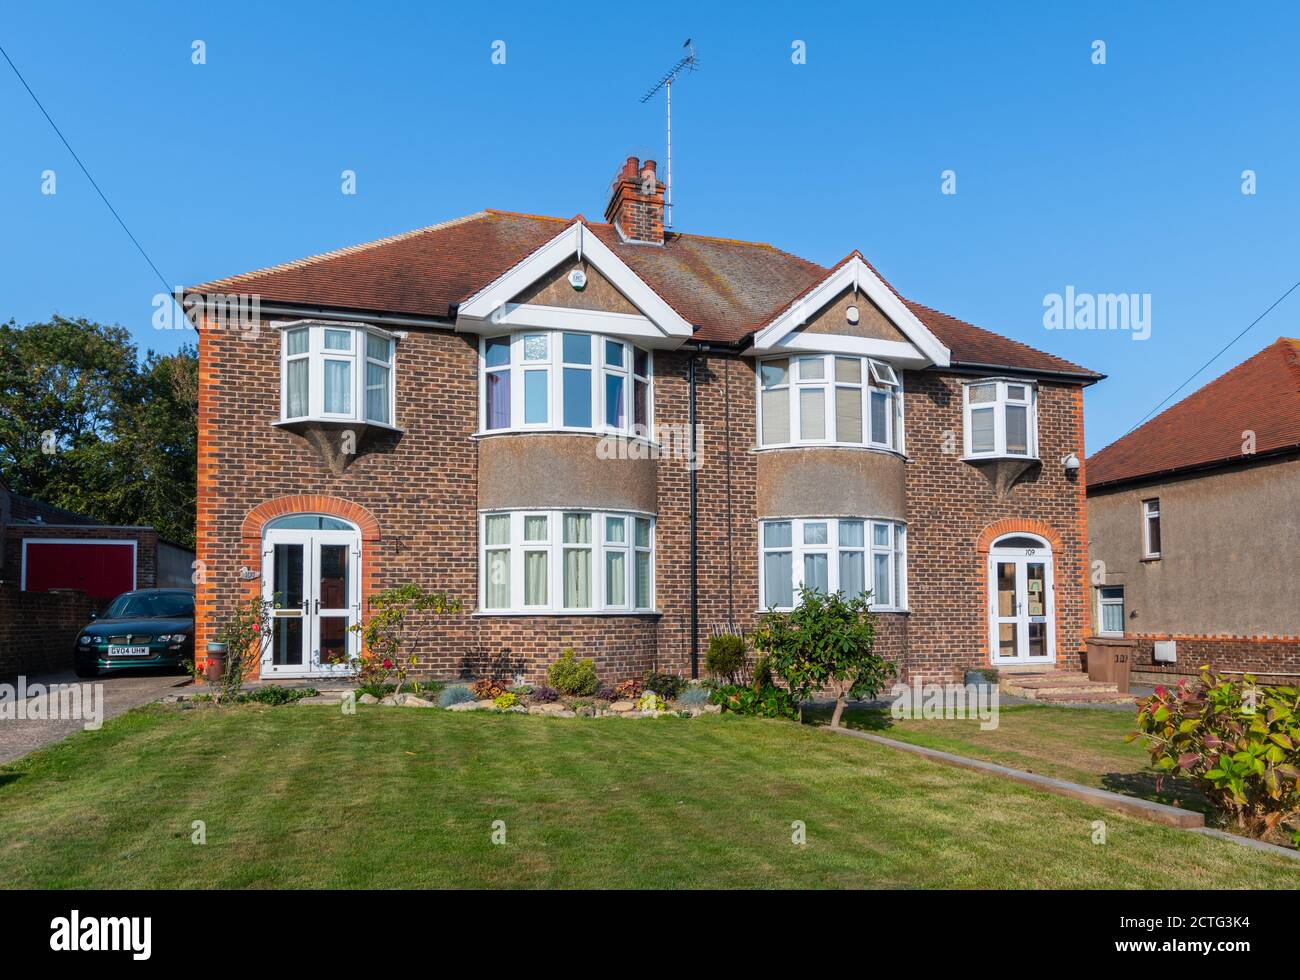 Große zweistöckige britische Doppelhaushälfte aus den 1930er Jahren aus Ziegelstein mit gebogenen Erkerfenstern in West Sussex, England, Großbritannien. Stockfoto